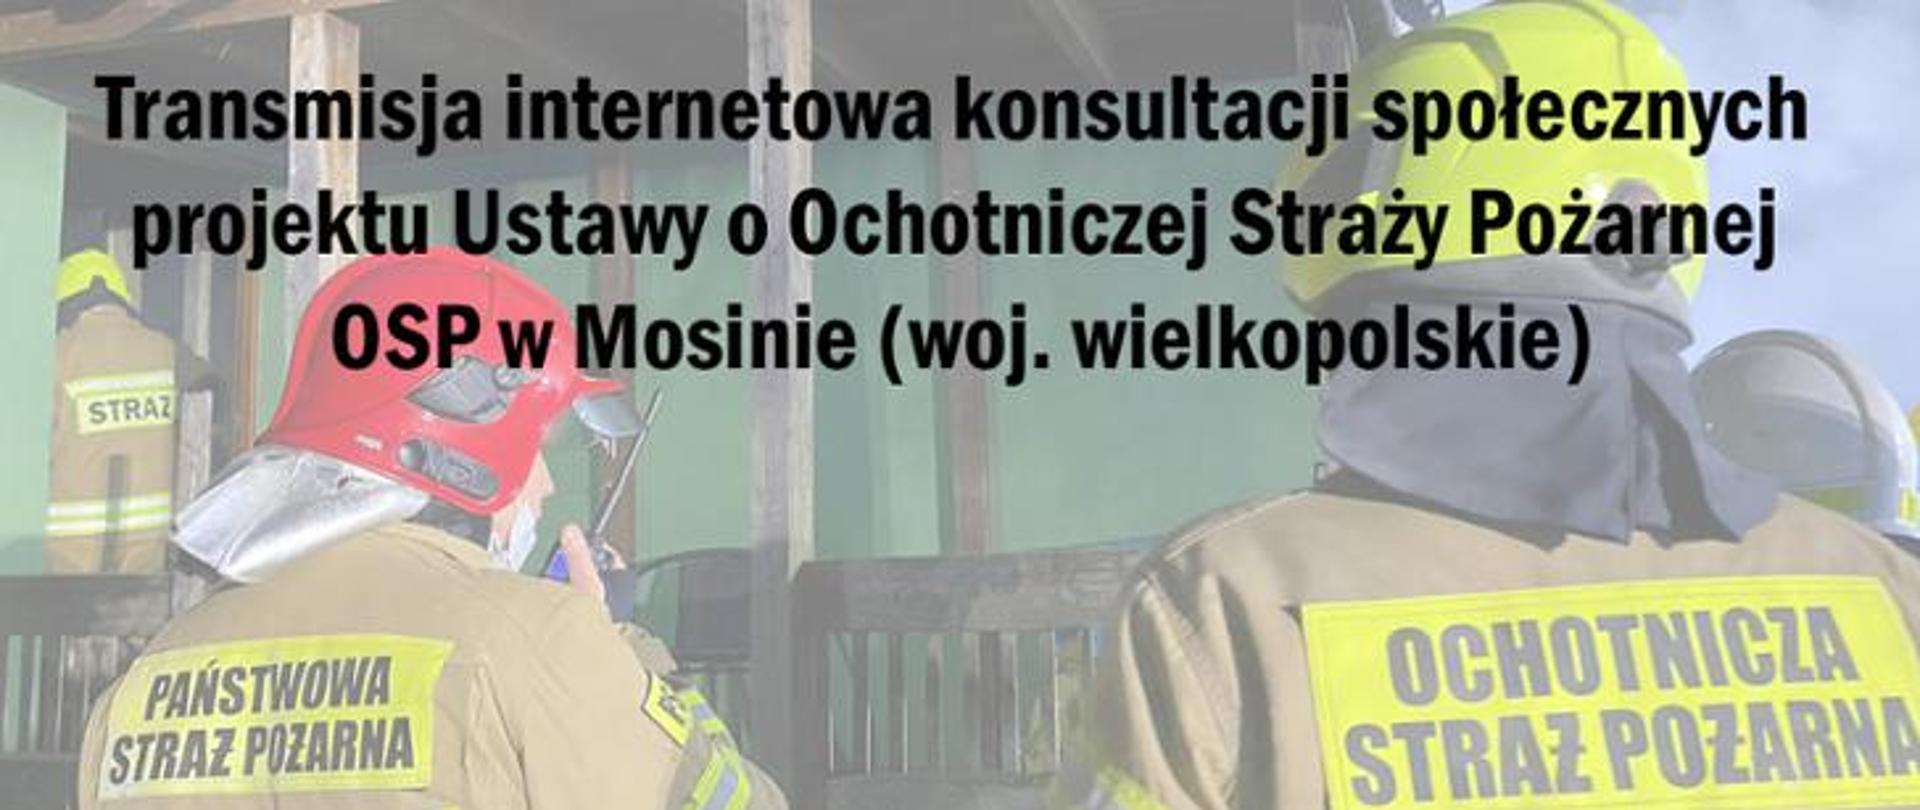 Pierwszy plan tekst - transmisja internetowa konsultacji społecznych projektu Ustawy o Ochotniczej Straży pożarnej w Mosinie (woj. wielkopolskie). w tle - strażacy w hełmach i z napisem na kurtkach PSP i OSP